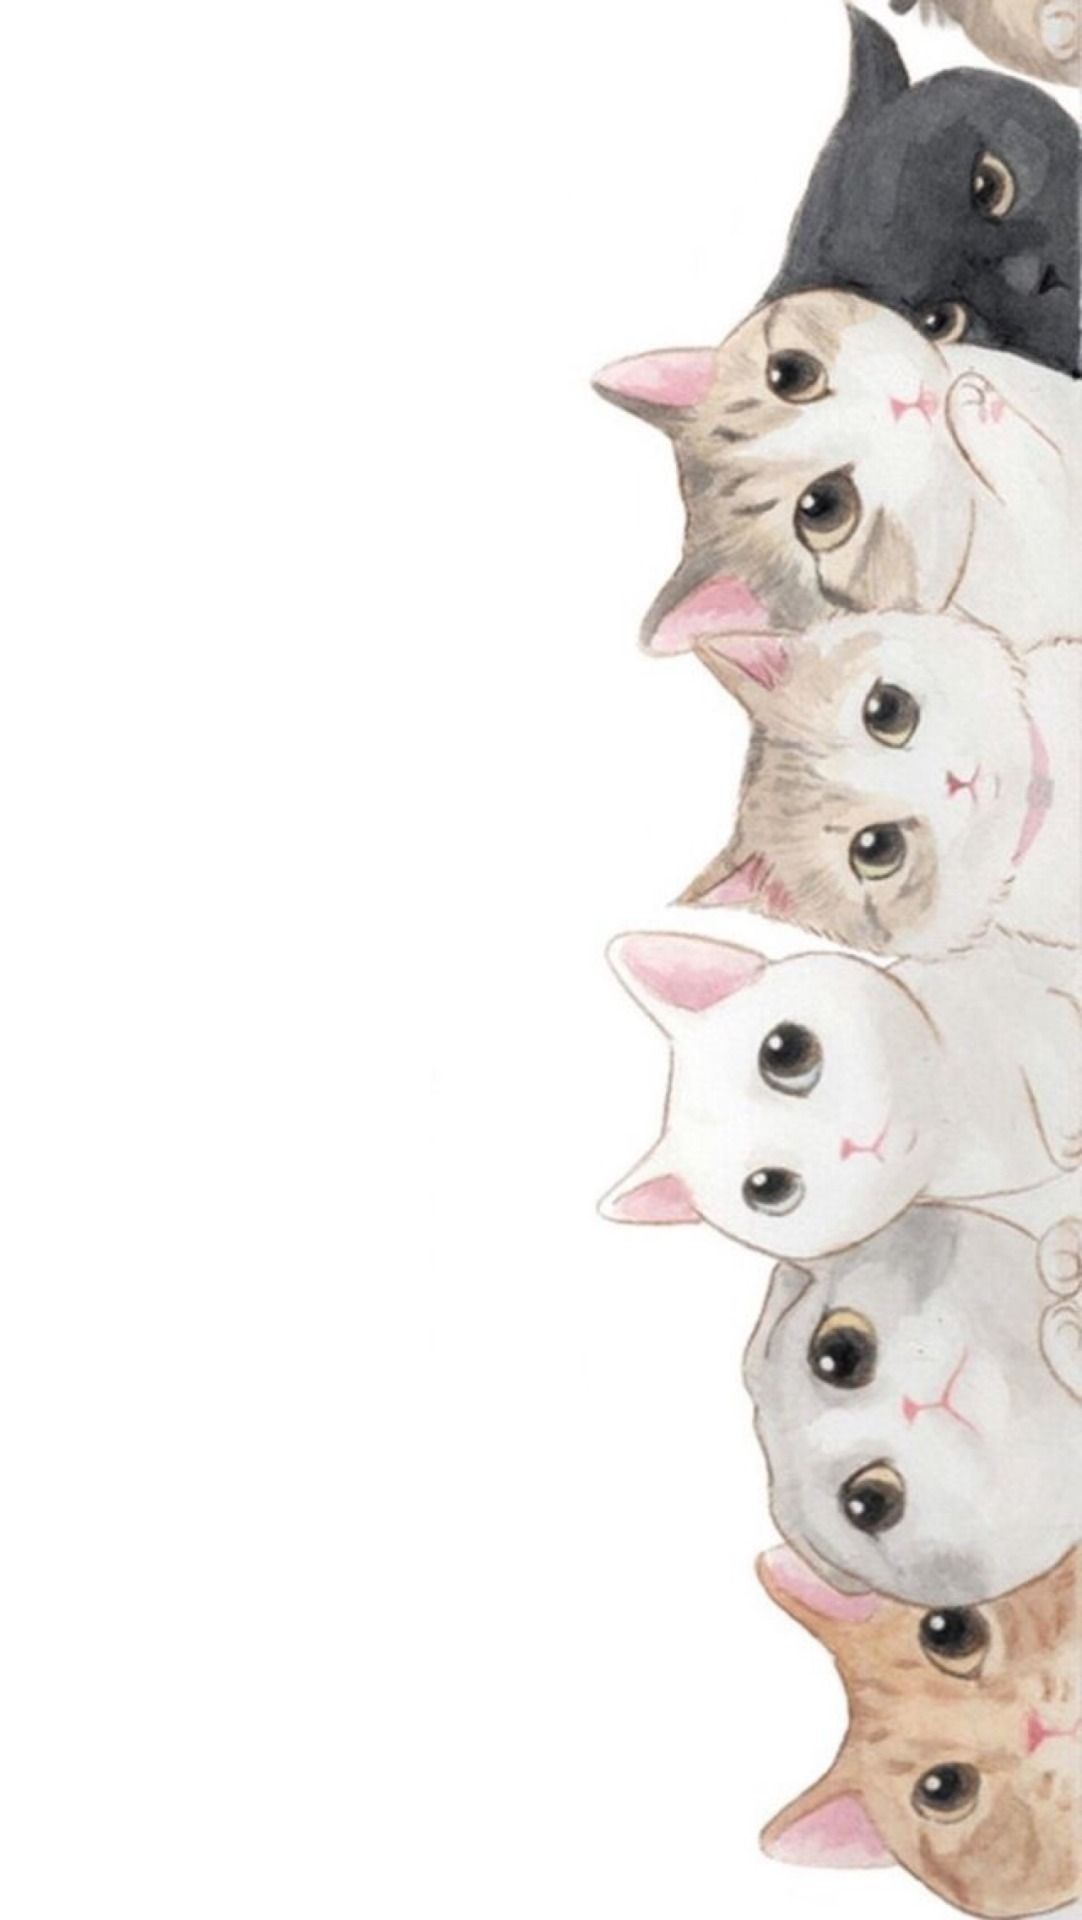 Cute Cat Wallpaper